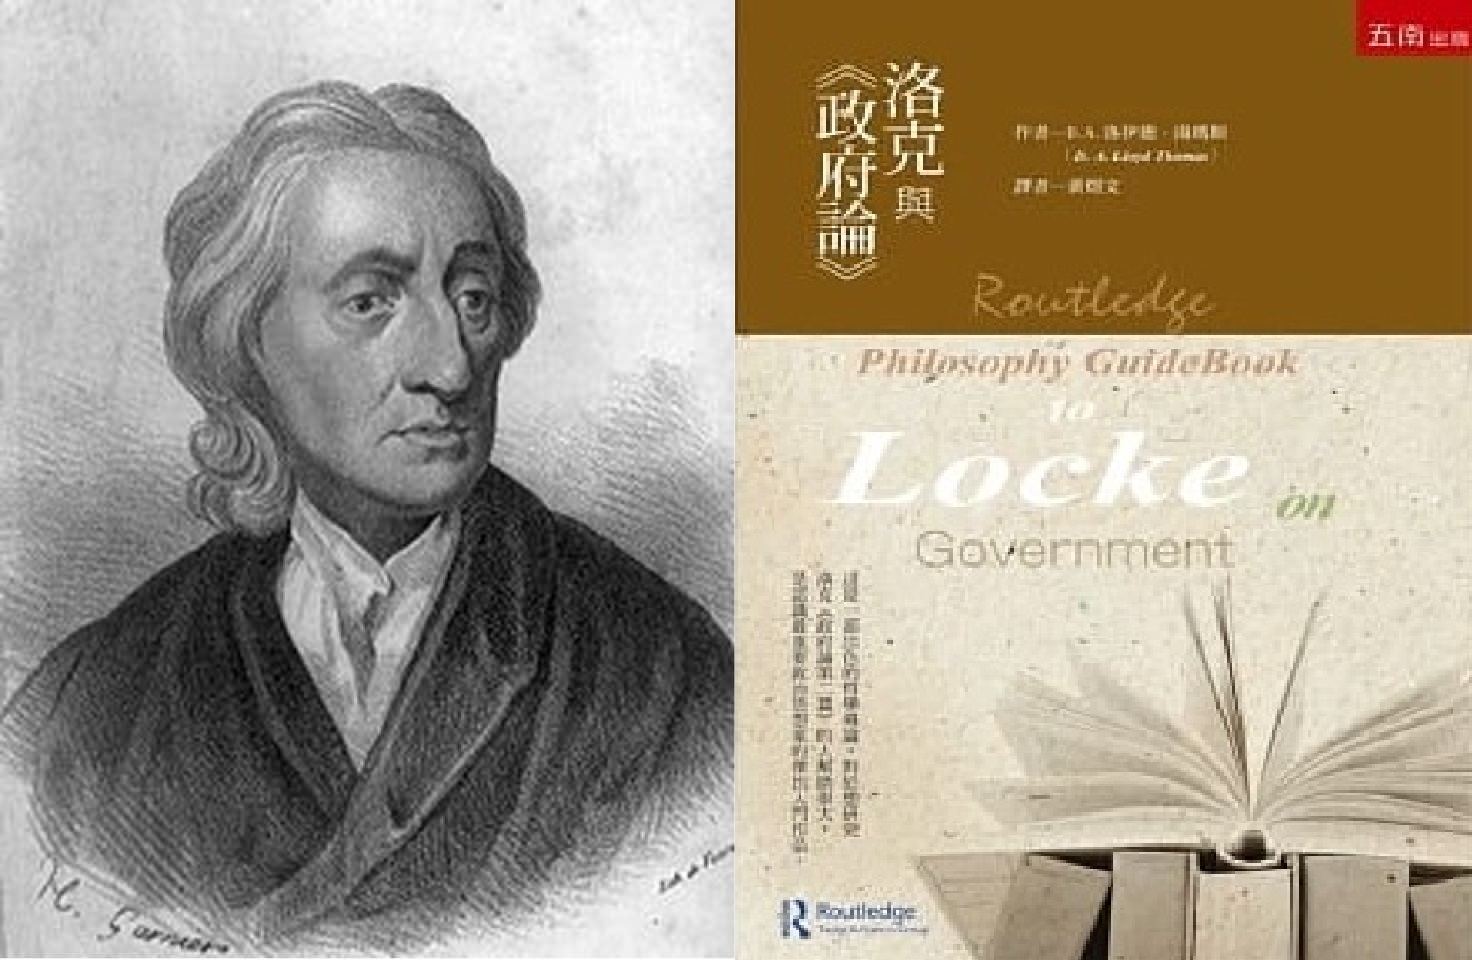 約翰洛克（John Locke）的《政府論》